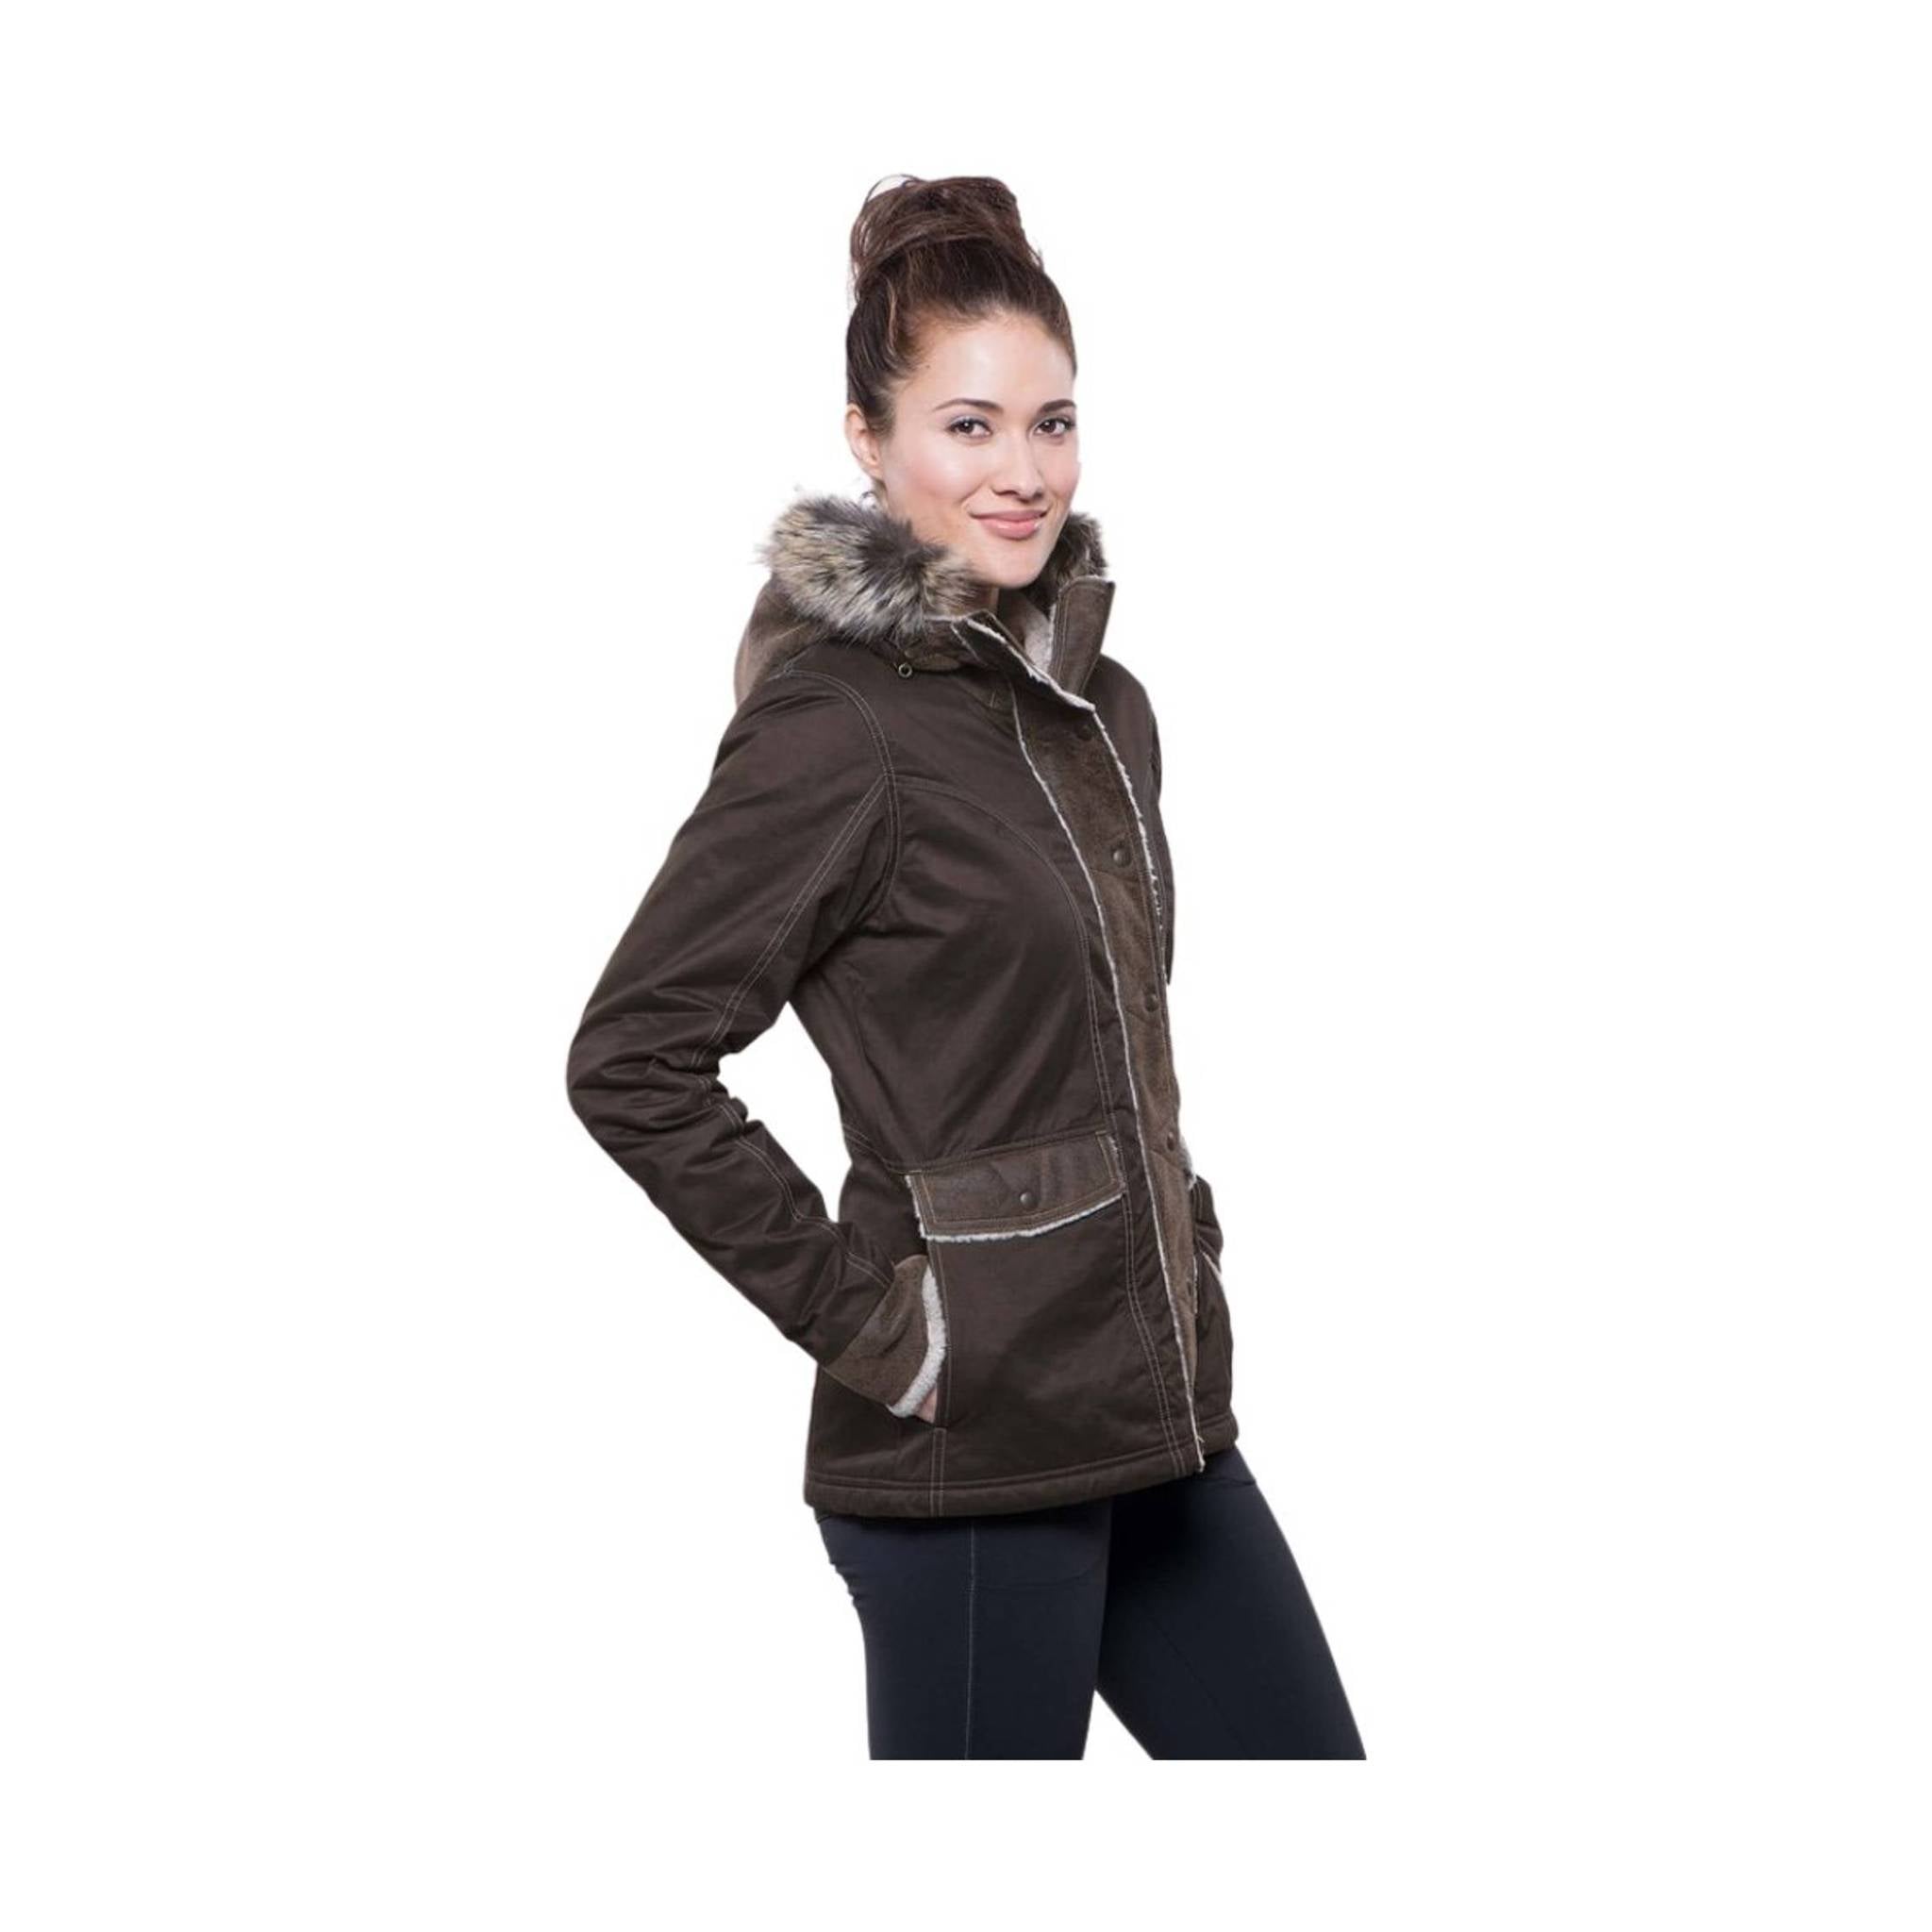 Kuhl Women's Arktik Jacket - Olive